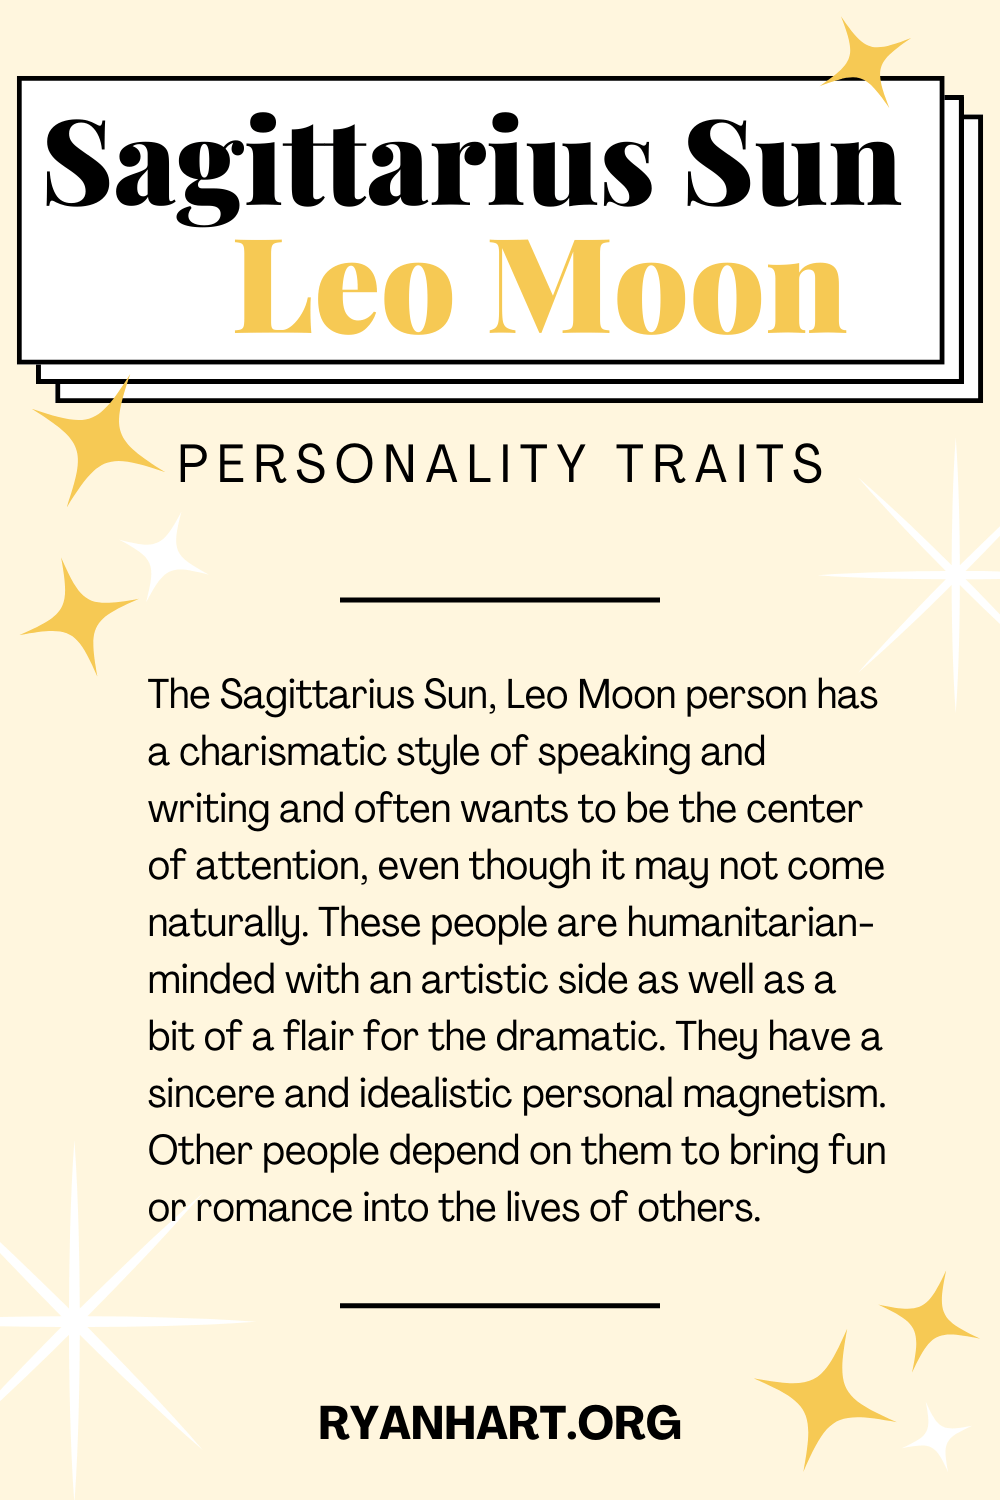 Sagittarius Sun Leo Moon Description